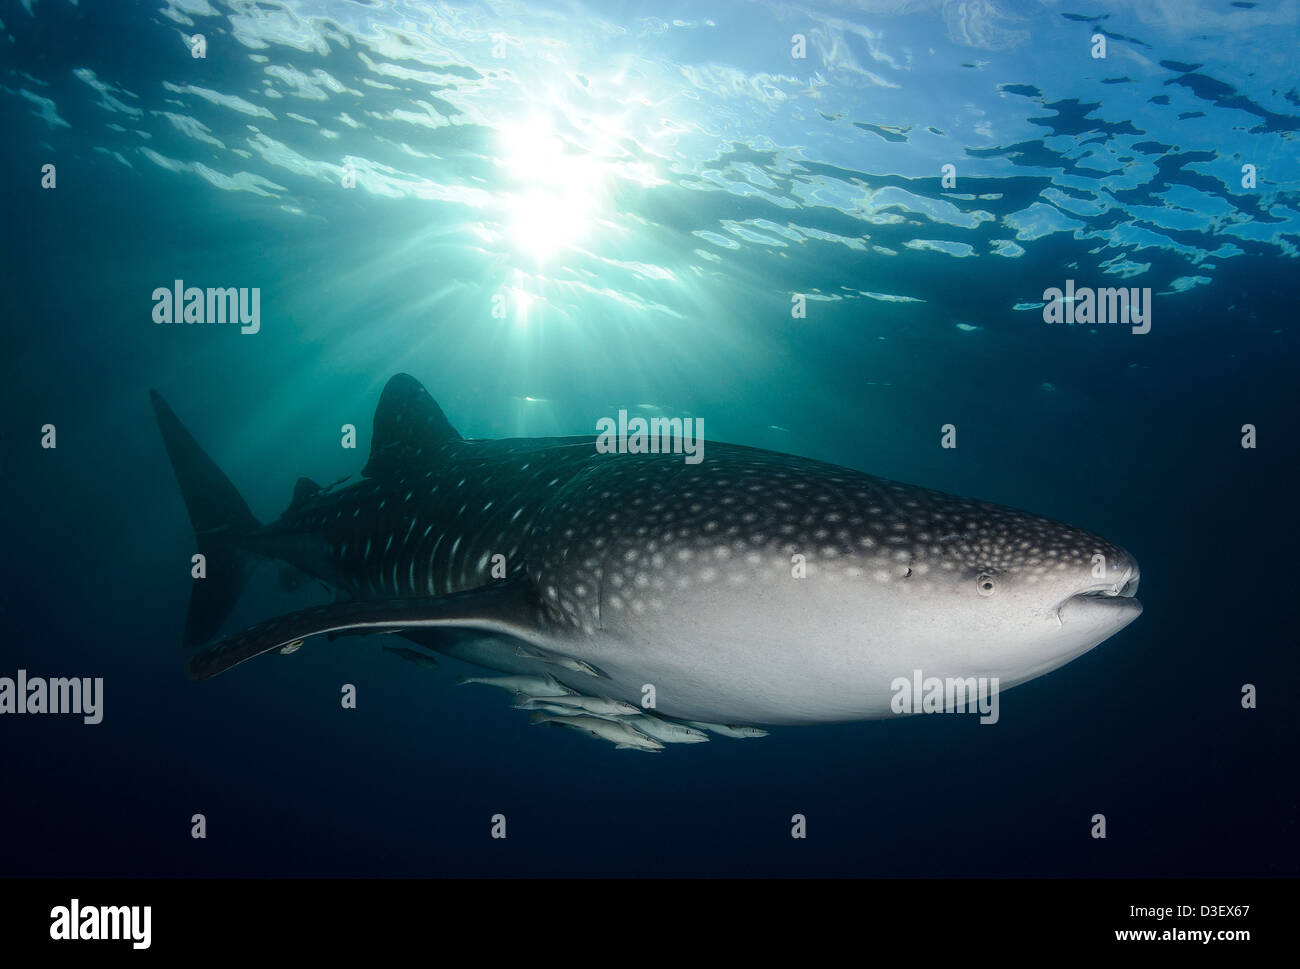 Un requin-baleine (Rhincodon typus), près de la surface comme le soleil du soir descend, l'envoi de lumière sur le requin, l'Indonésie Banque D'Images